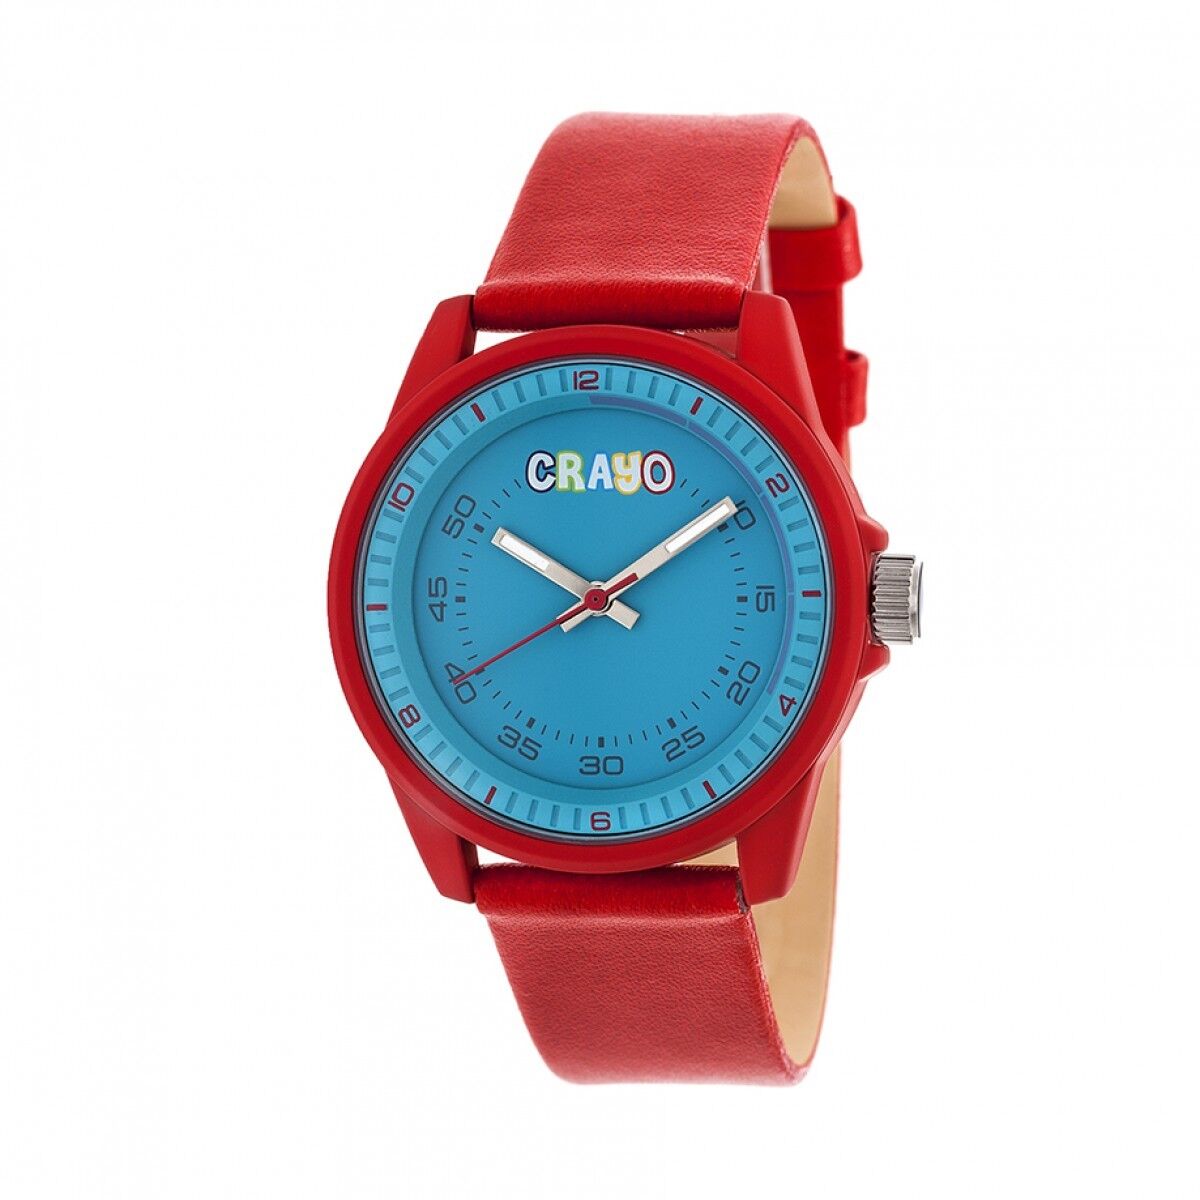 Crayo Jolt Unisexe Rouge Montre Quartz Bracelet CR4902